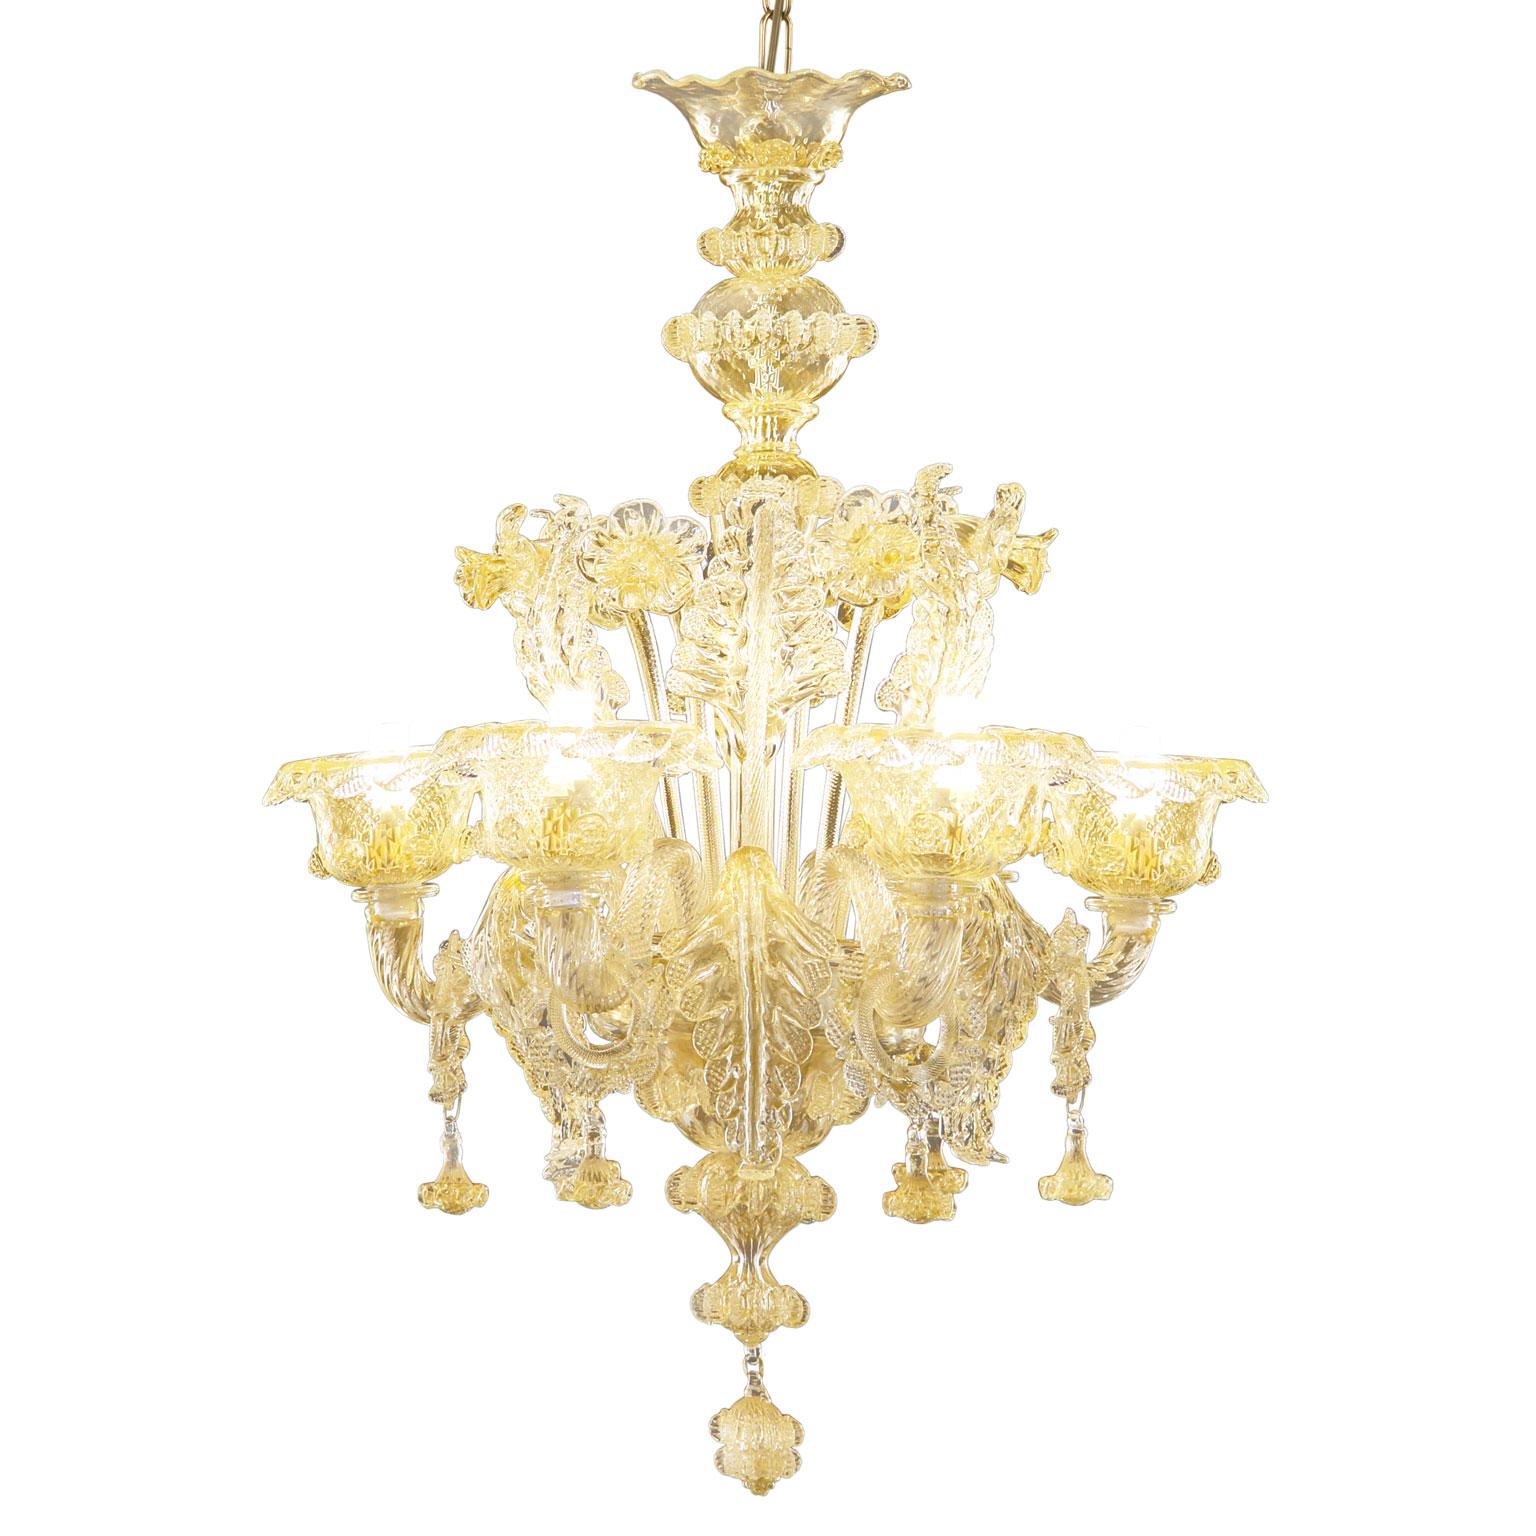 Das besondere Merkmal der Beleuchtungskollektion Galliano ist der Reichtum der Dekorationen.
Dieser künstlerische Luxus-Glaskronleuchter mit 6 Lichtern ist handgefertigt in Goldglas.
Galliano ist unsere Hommage an die authentische Tradition des